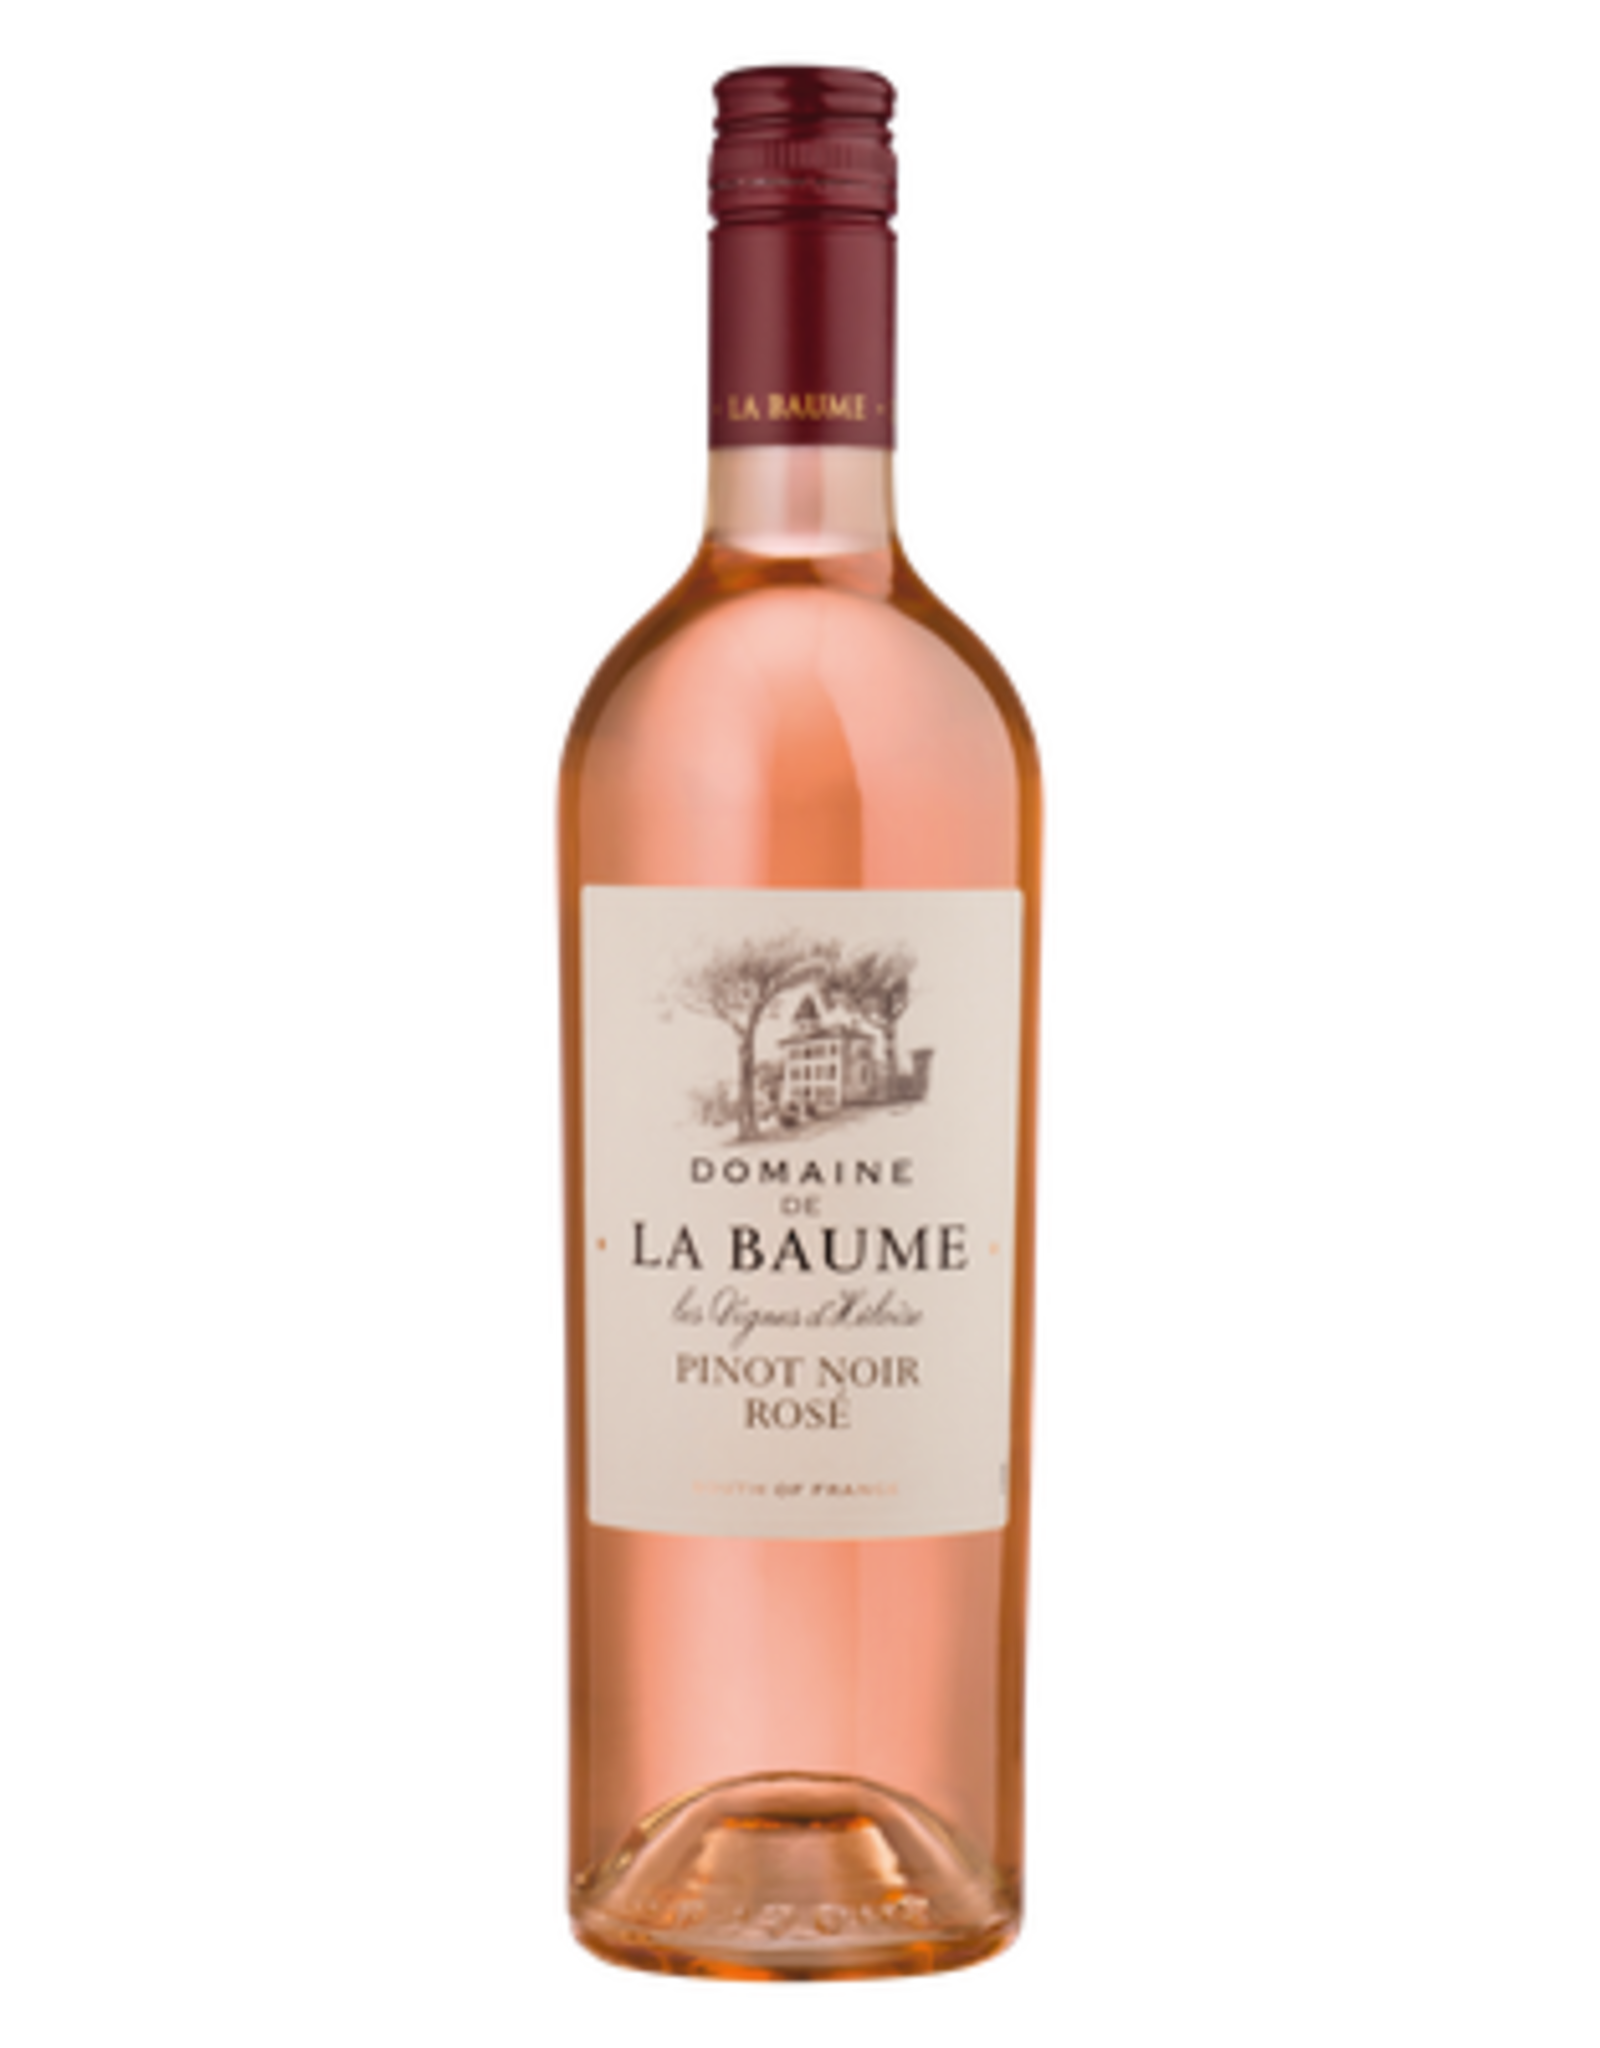 Domaine de la Baume Domaine de la baume Pinot Noir rose